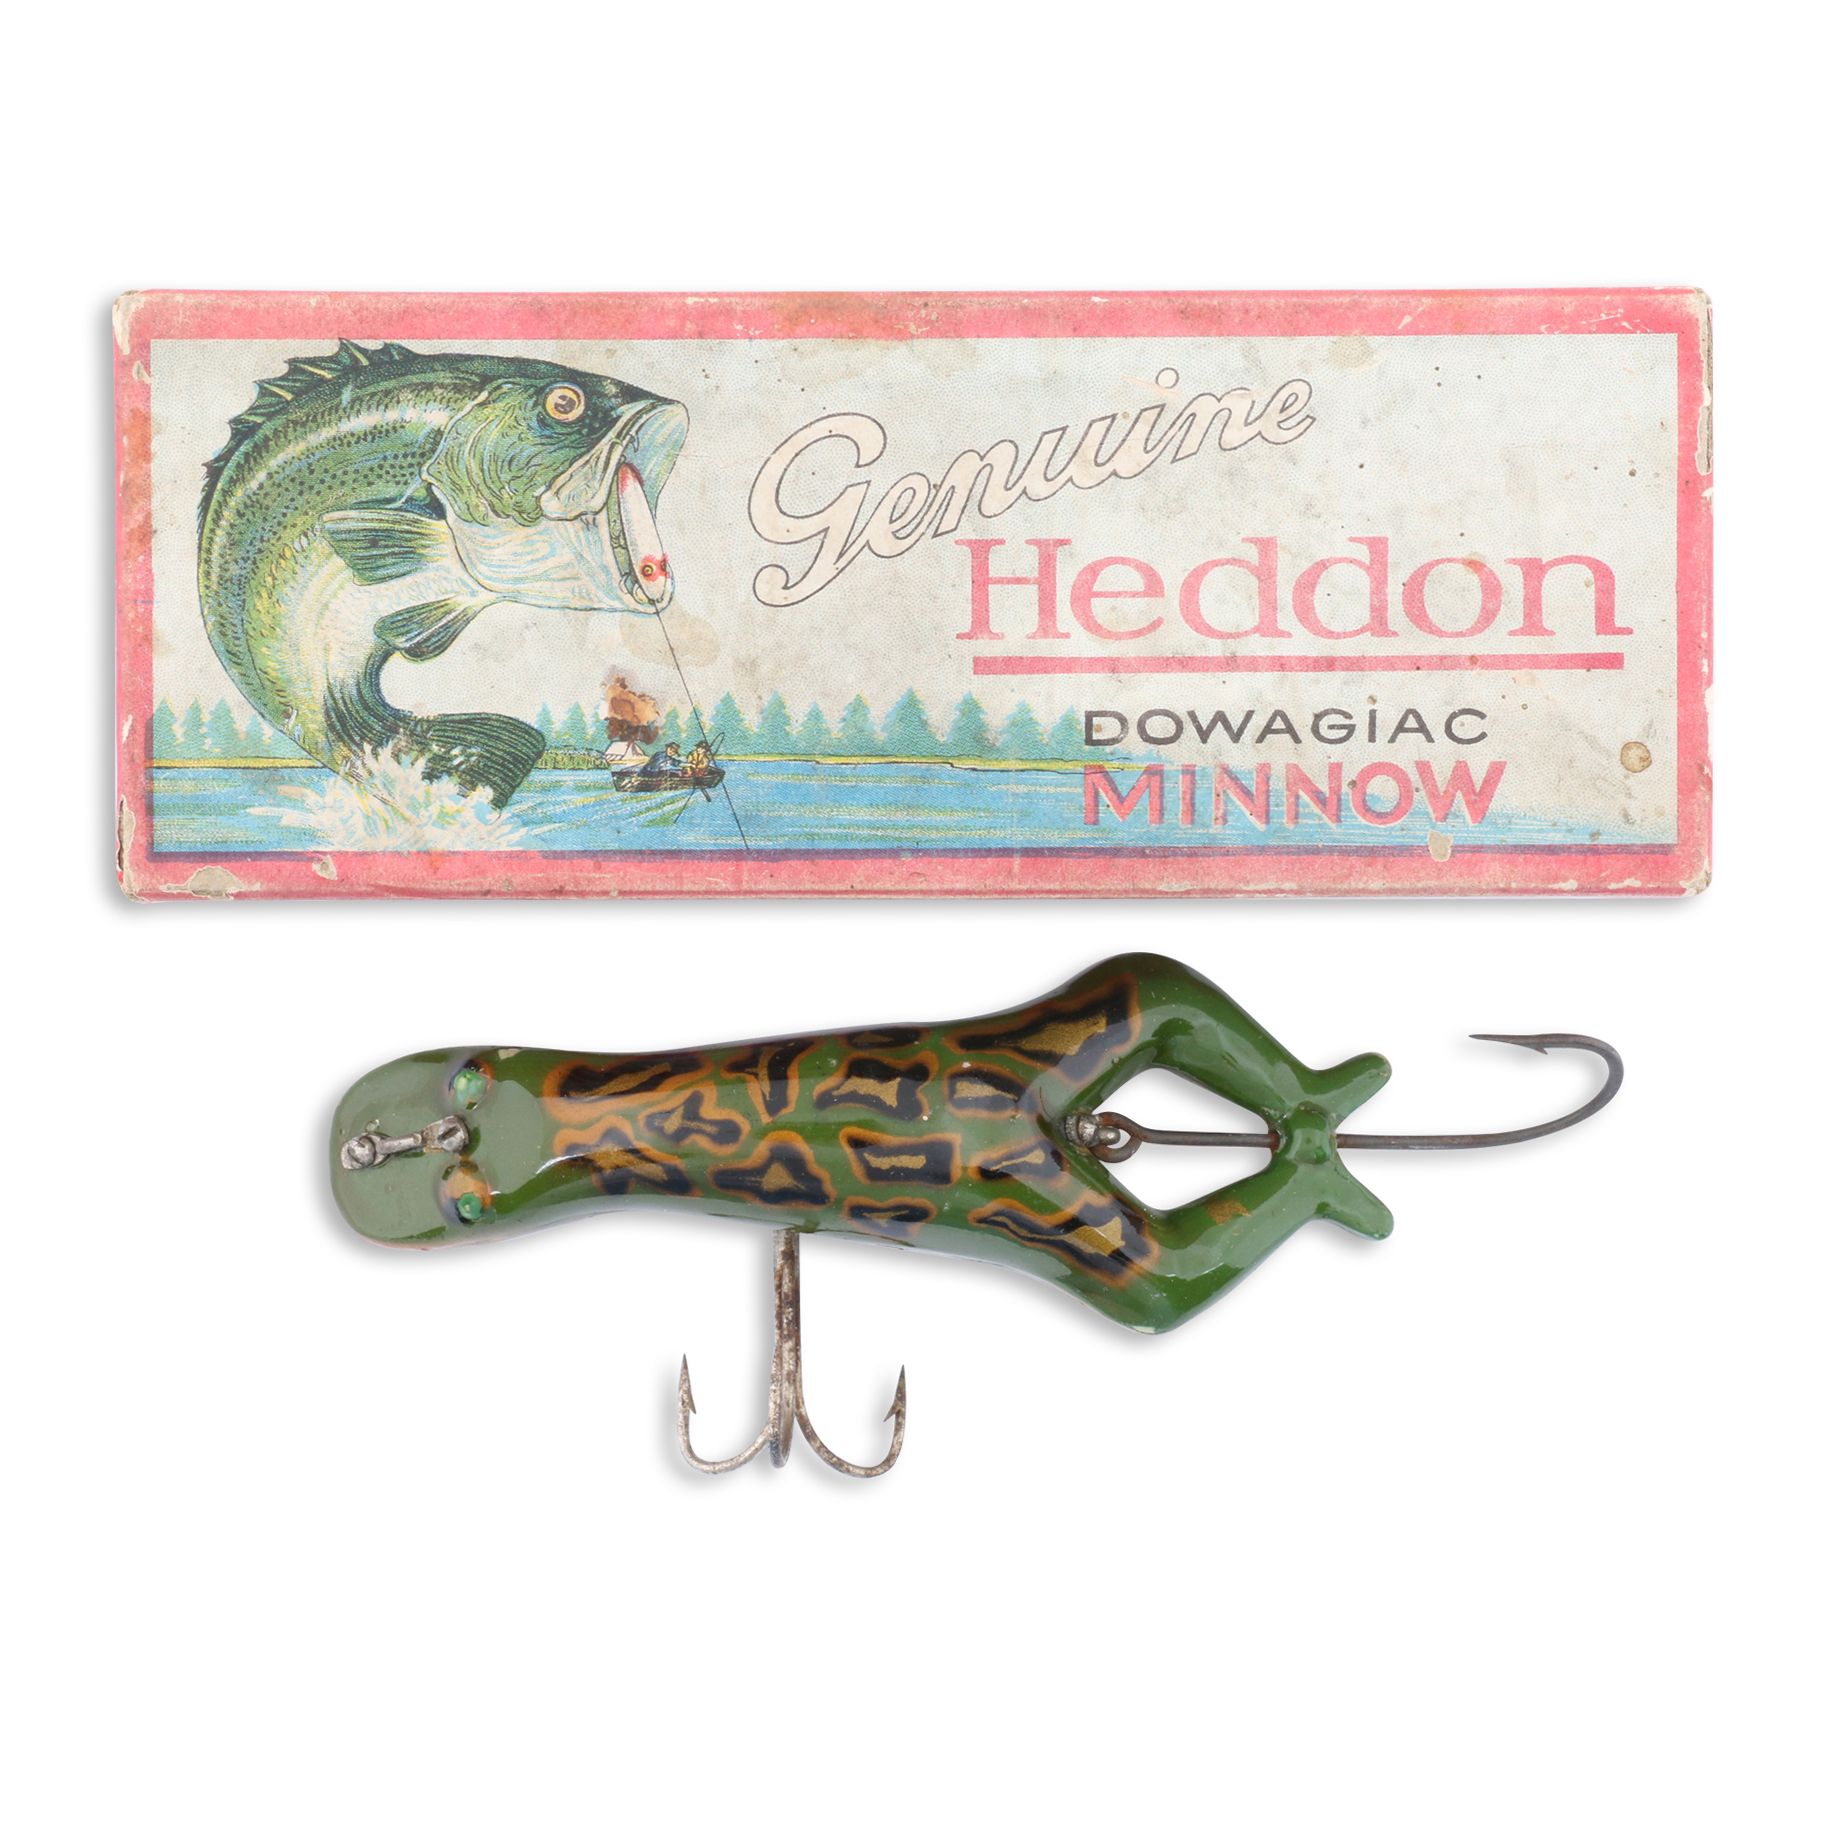 Heddon Luny Frog | Miller & Miller Auctions Ltd